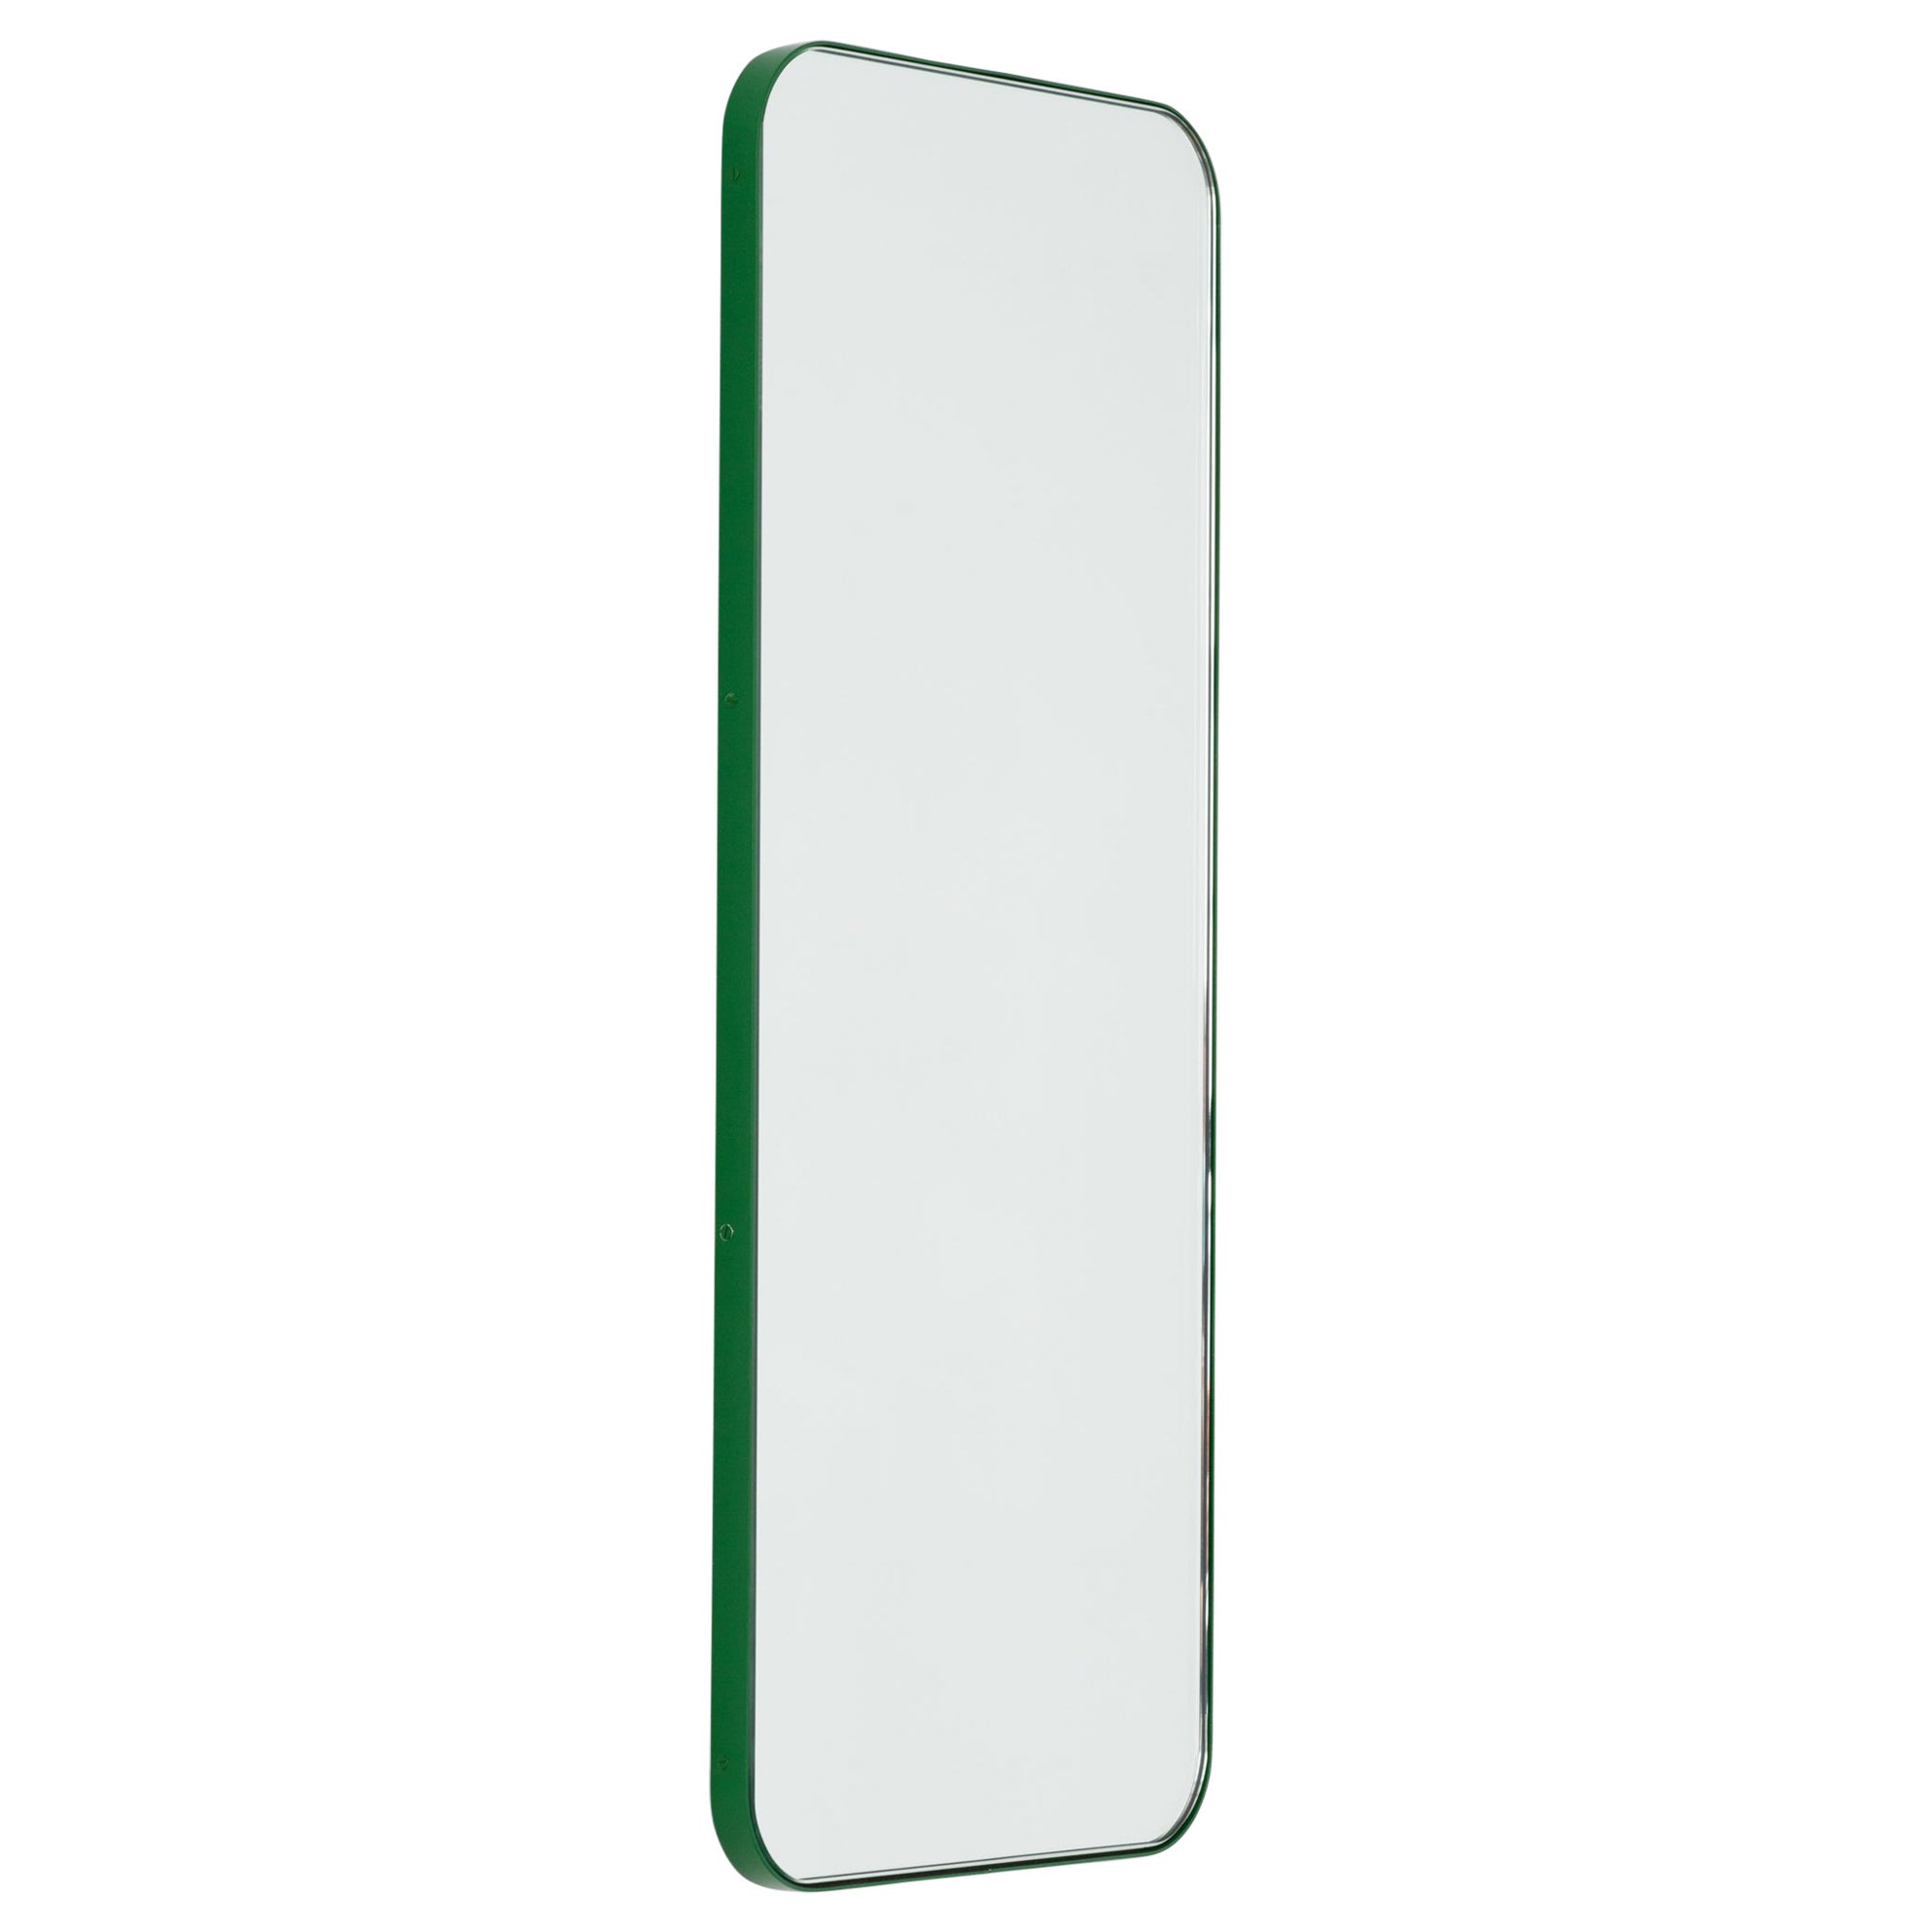 Grand miroir moderne rectangulaire avec cadre vert de la collection Quadris